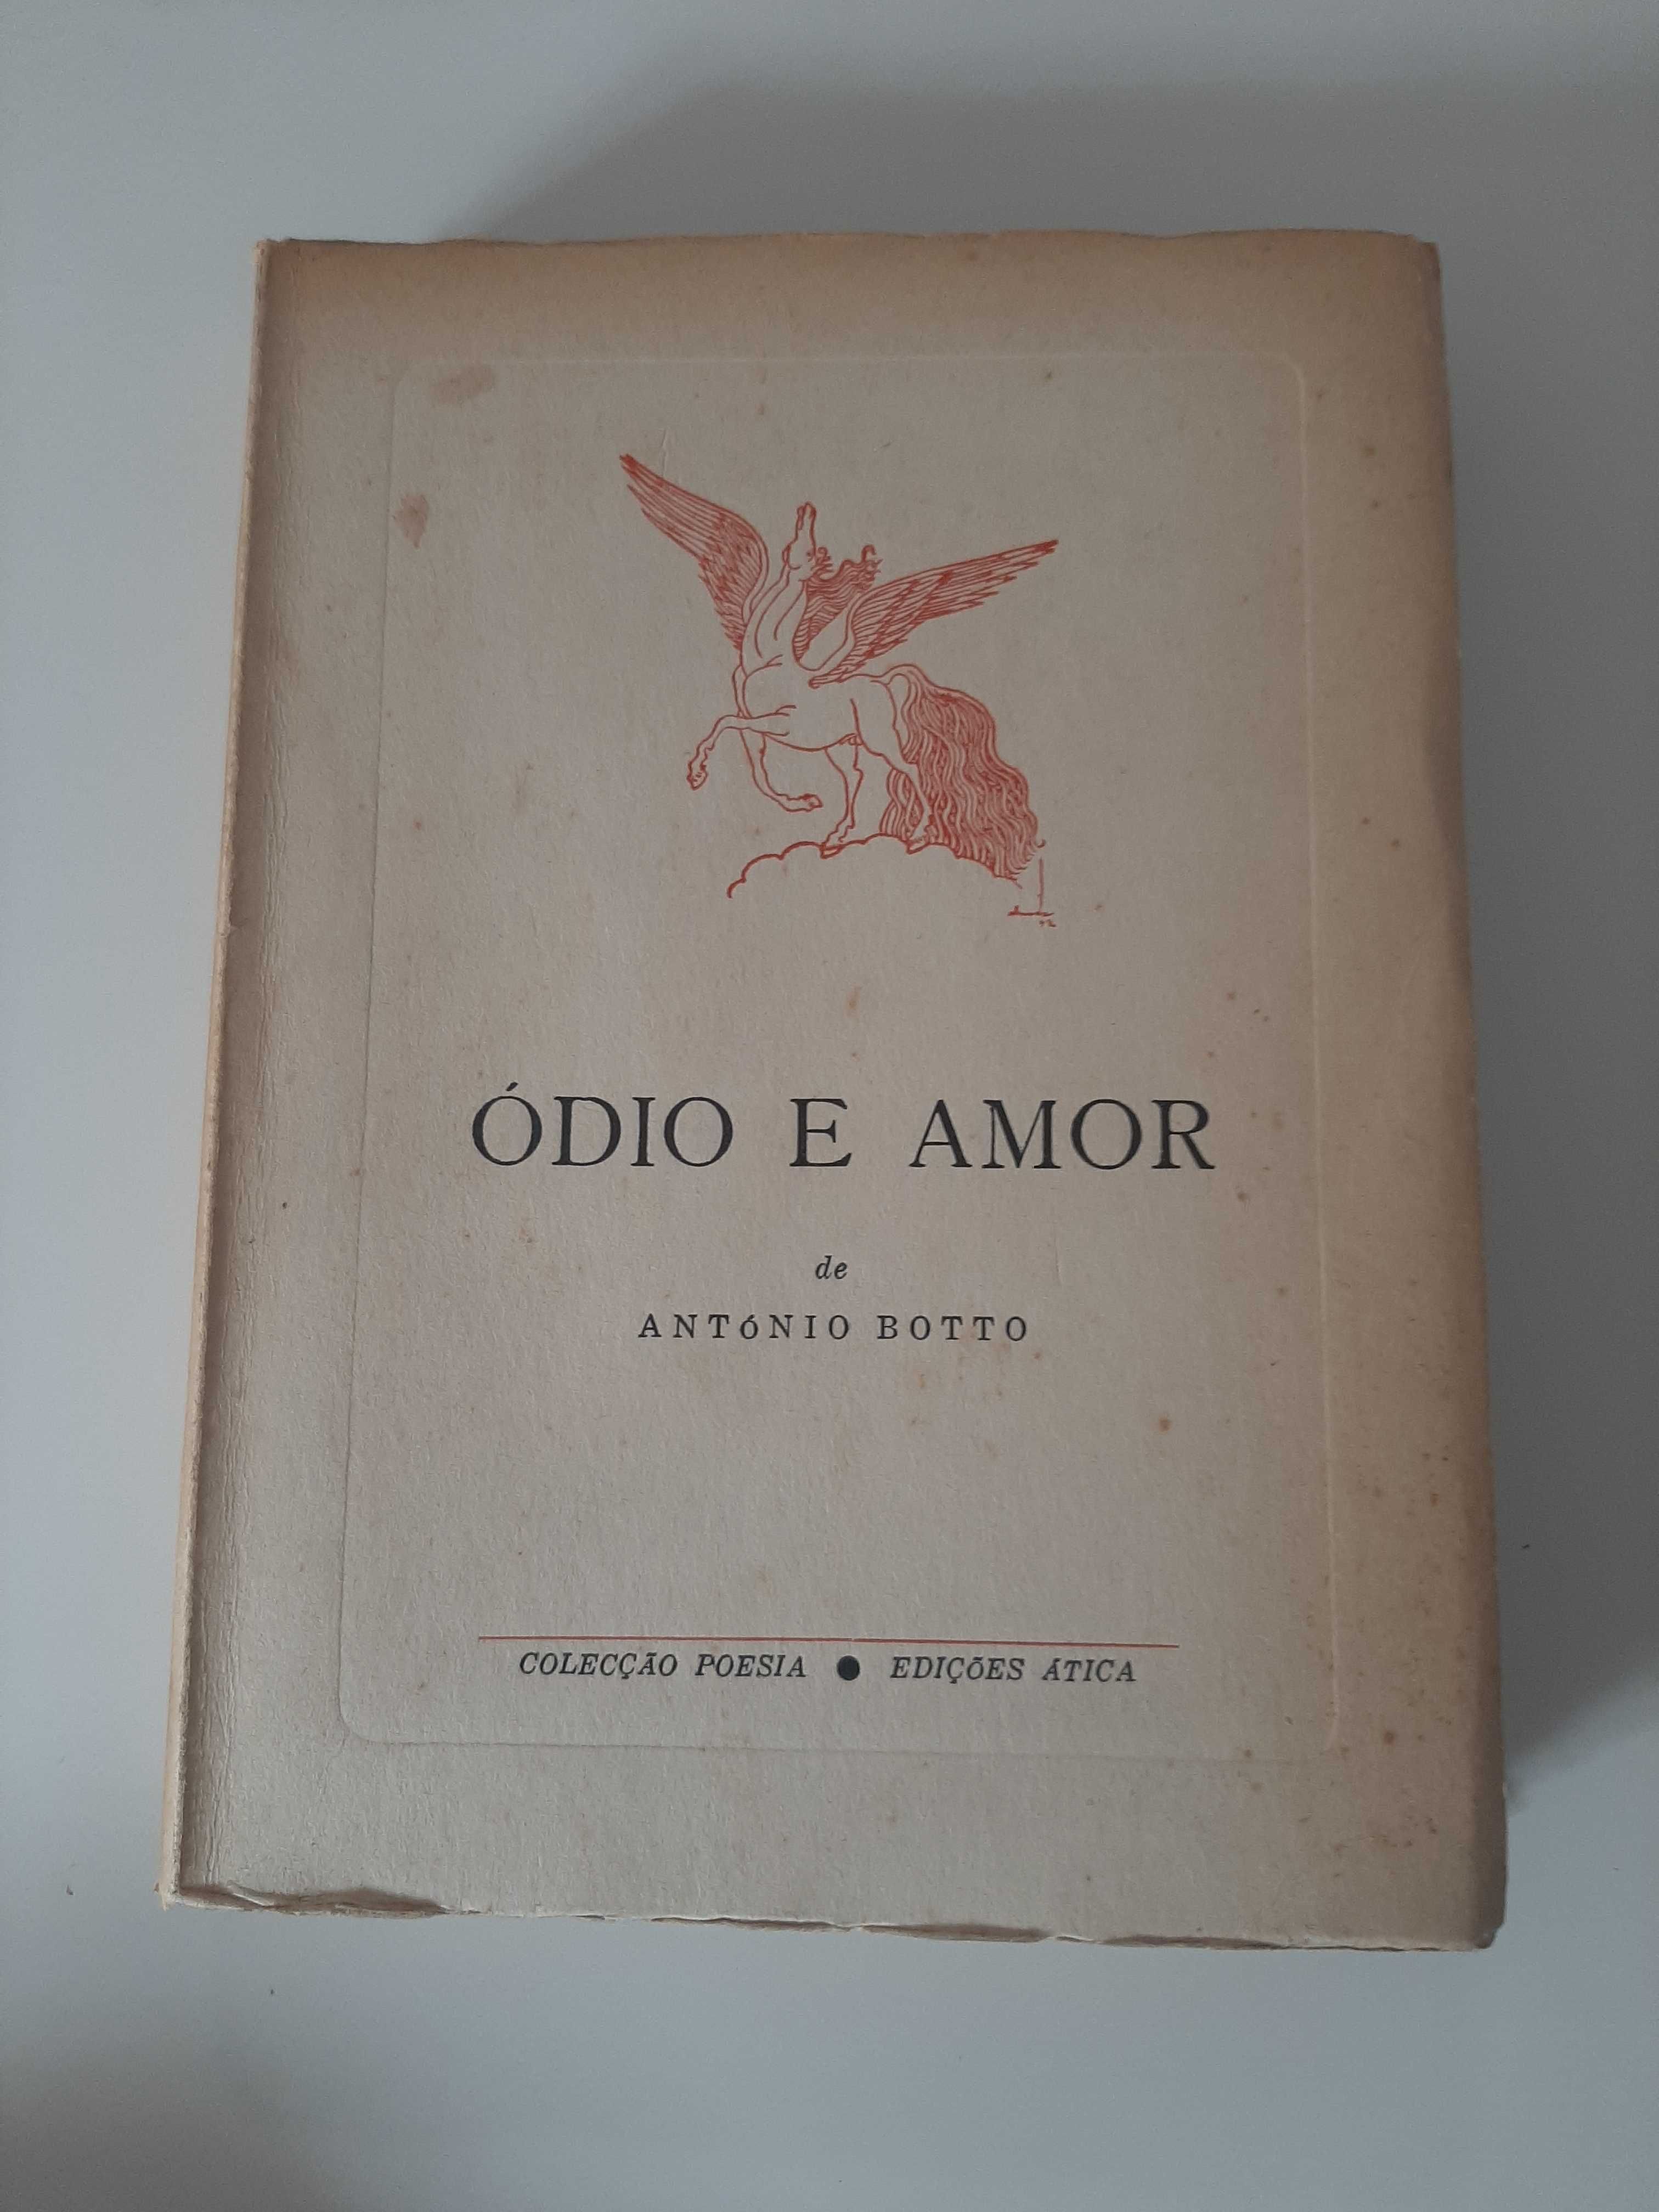 Lote de livros raros - Poesia, Luandino, Jorge de Sena, &etc...